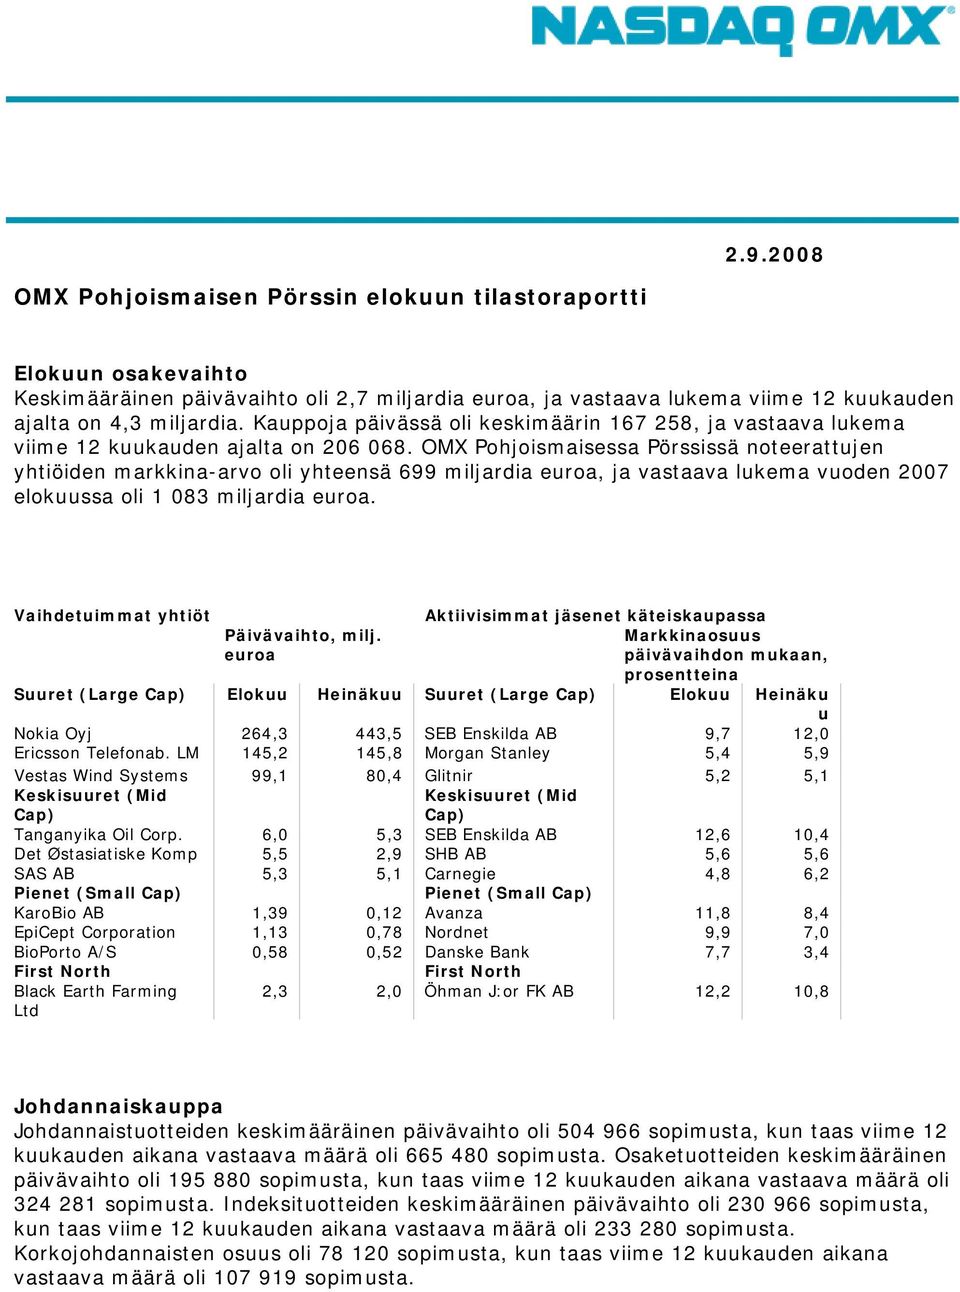 OMX Pohjoismaisessa Pörssissä noteerattujen yhtiöiden markkina-arvo oli yhteensä 699 miljardia euroa, ja vastaava lukema vuoden elokuussa oli 1 083 miljardia euroa.